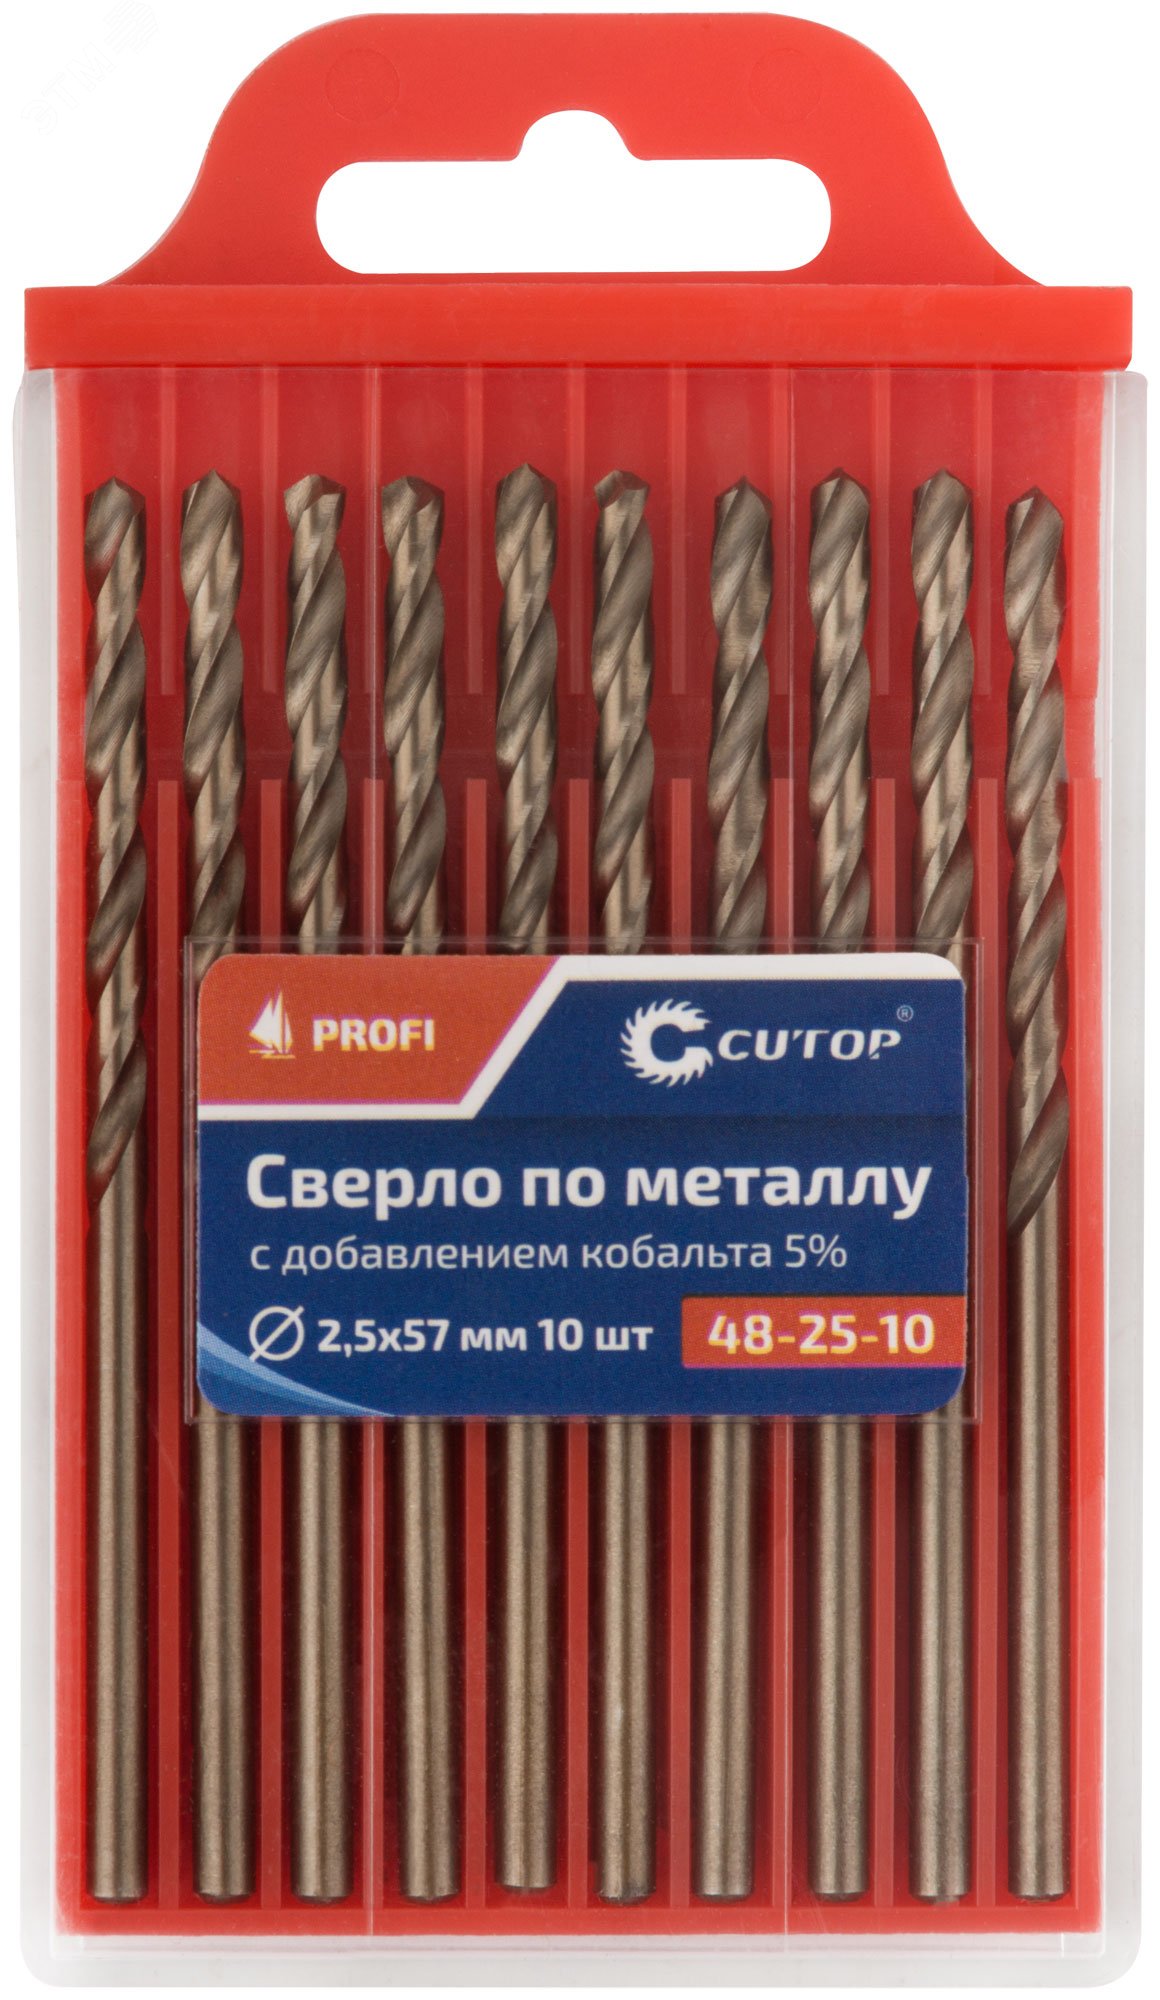 Сверло по металлу Cutop Profi с кобальтом 5%, 2.5 x 57 мм (10 шт) 48-25-10 CUTOP - превью 3